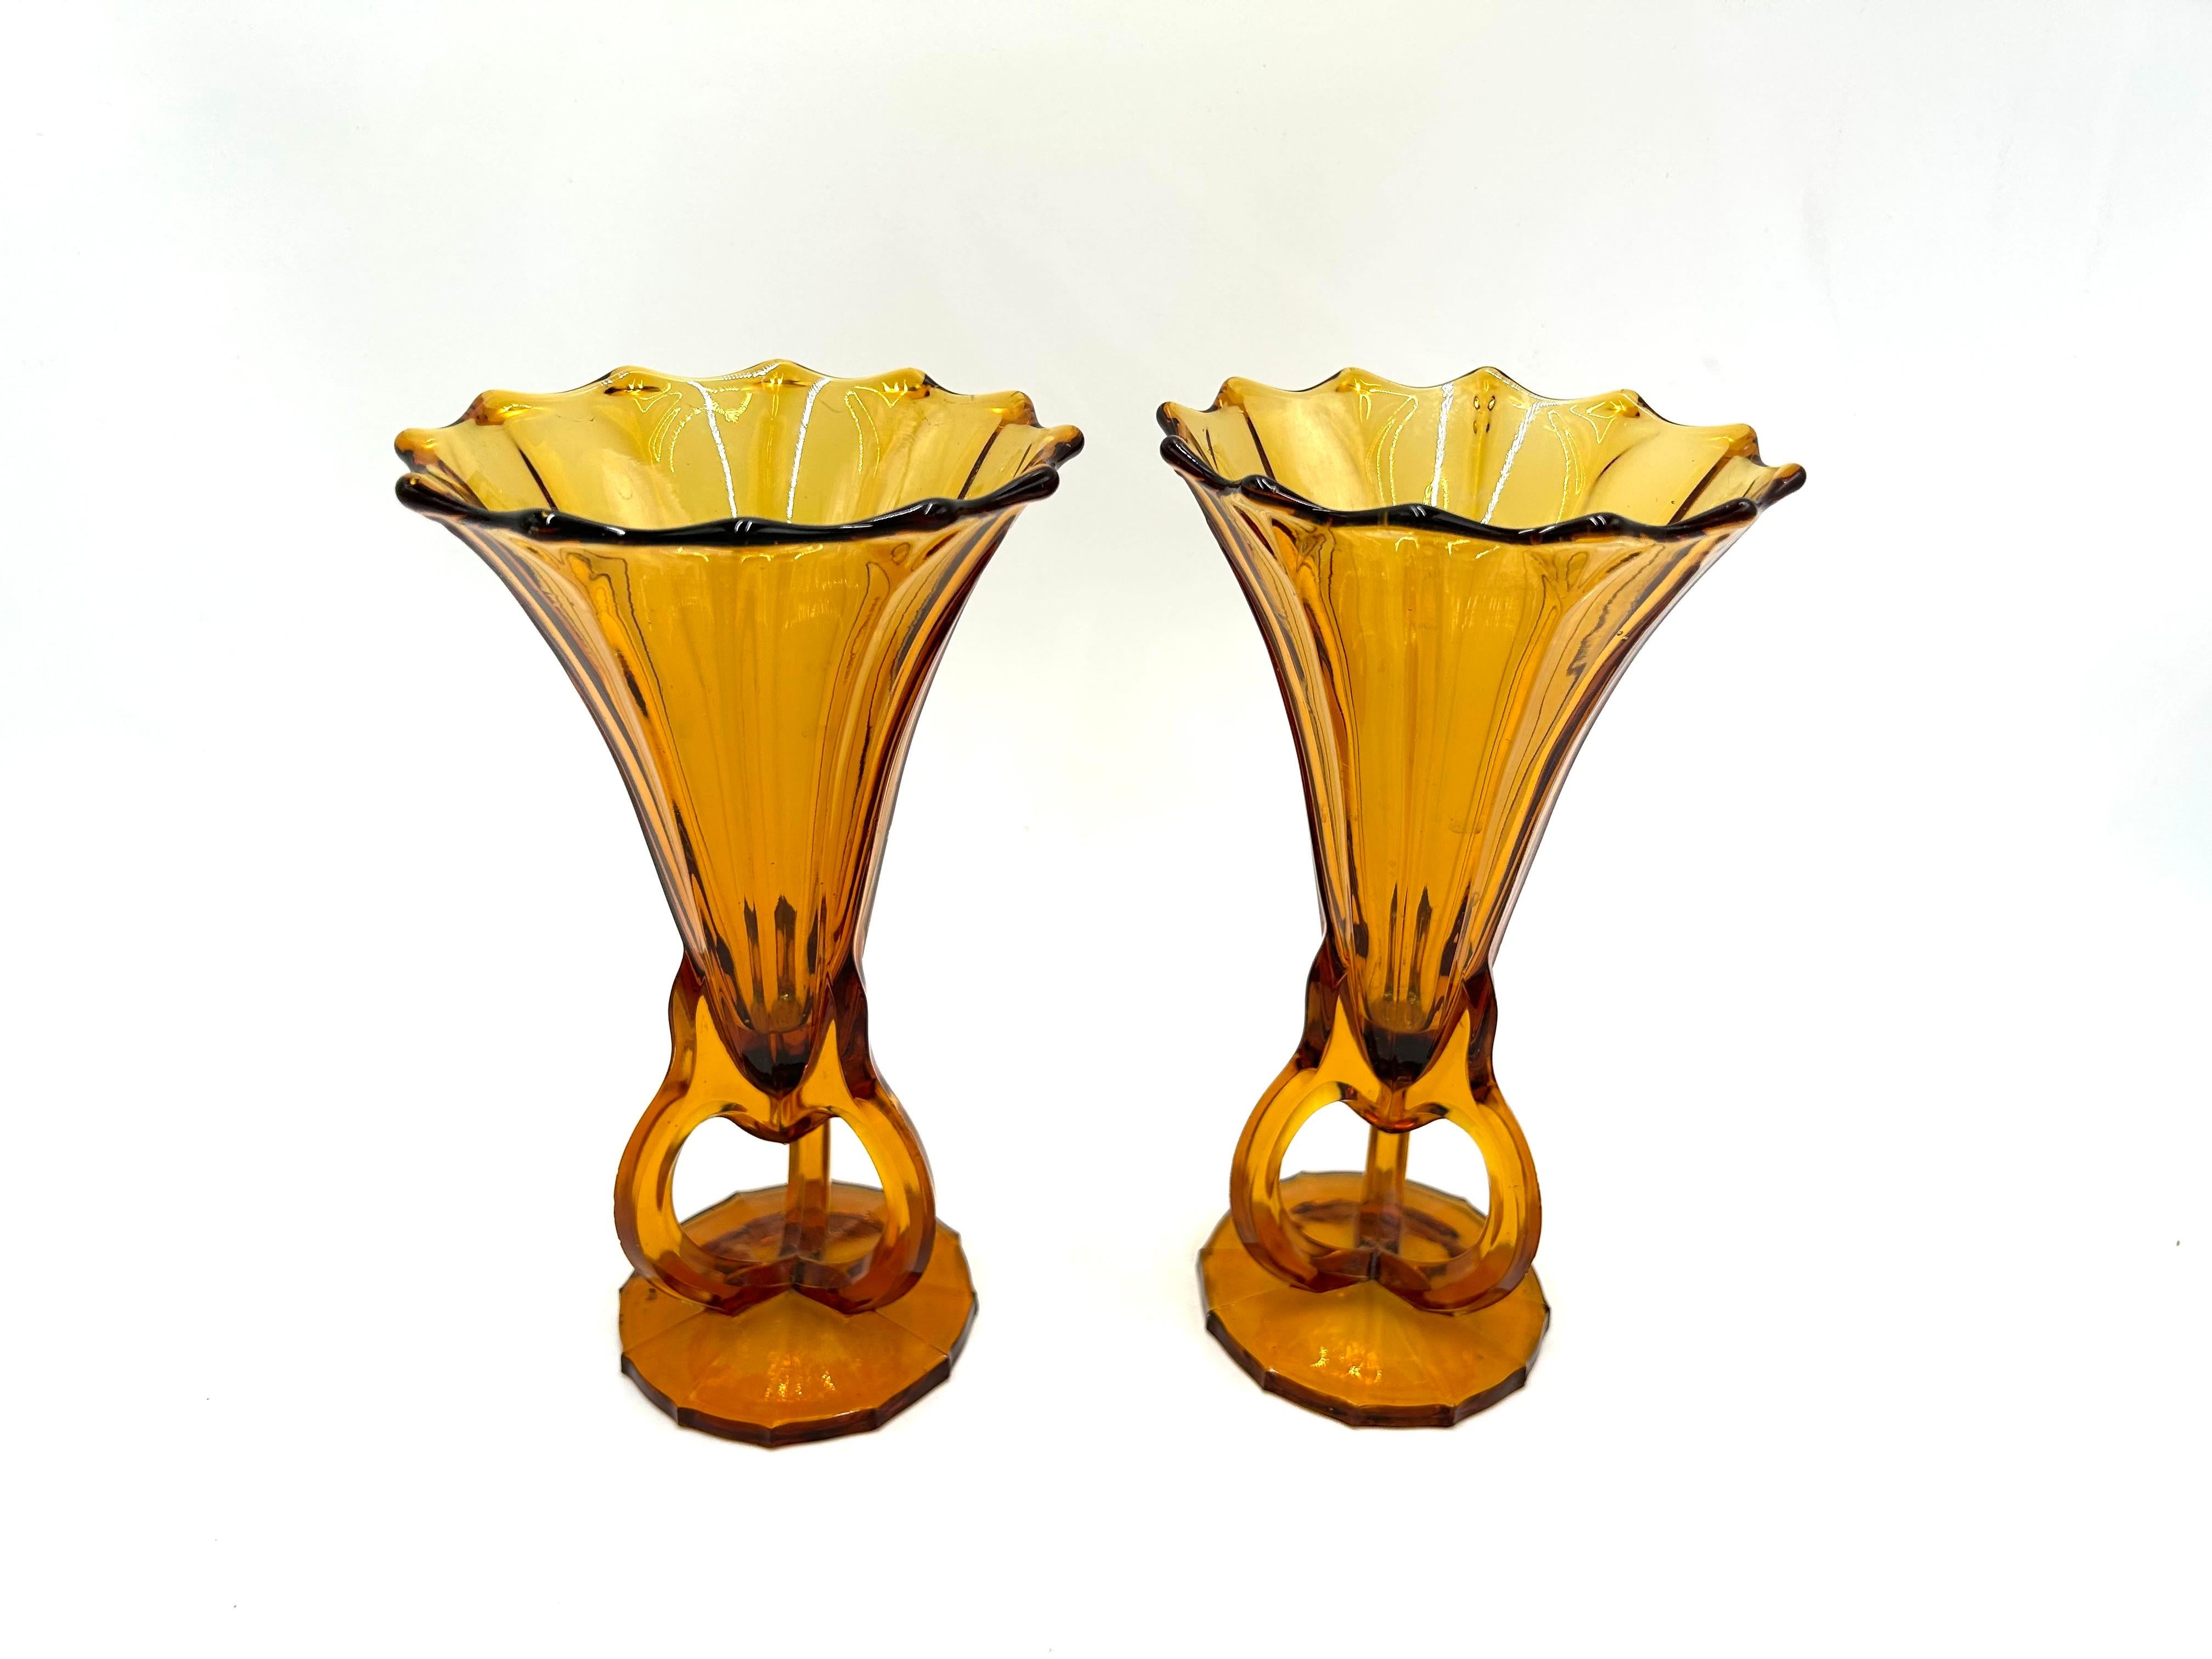 Une paire de vases en verre ambré Art Déco

Fabriqué en République tchèque dans les années 1930

Très bon état, aucun dommage.

hauteur : 21,5 cm

diamètre de la sortie : 12cm